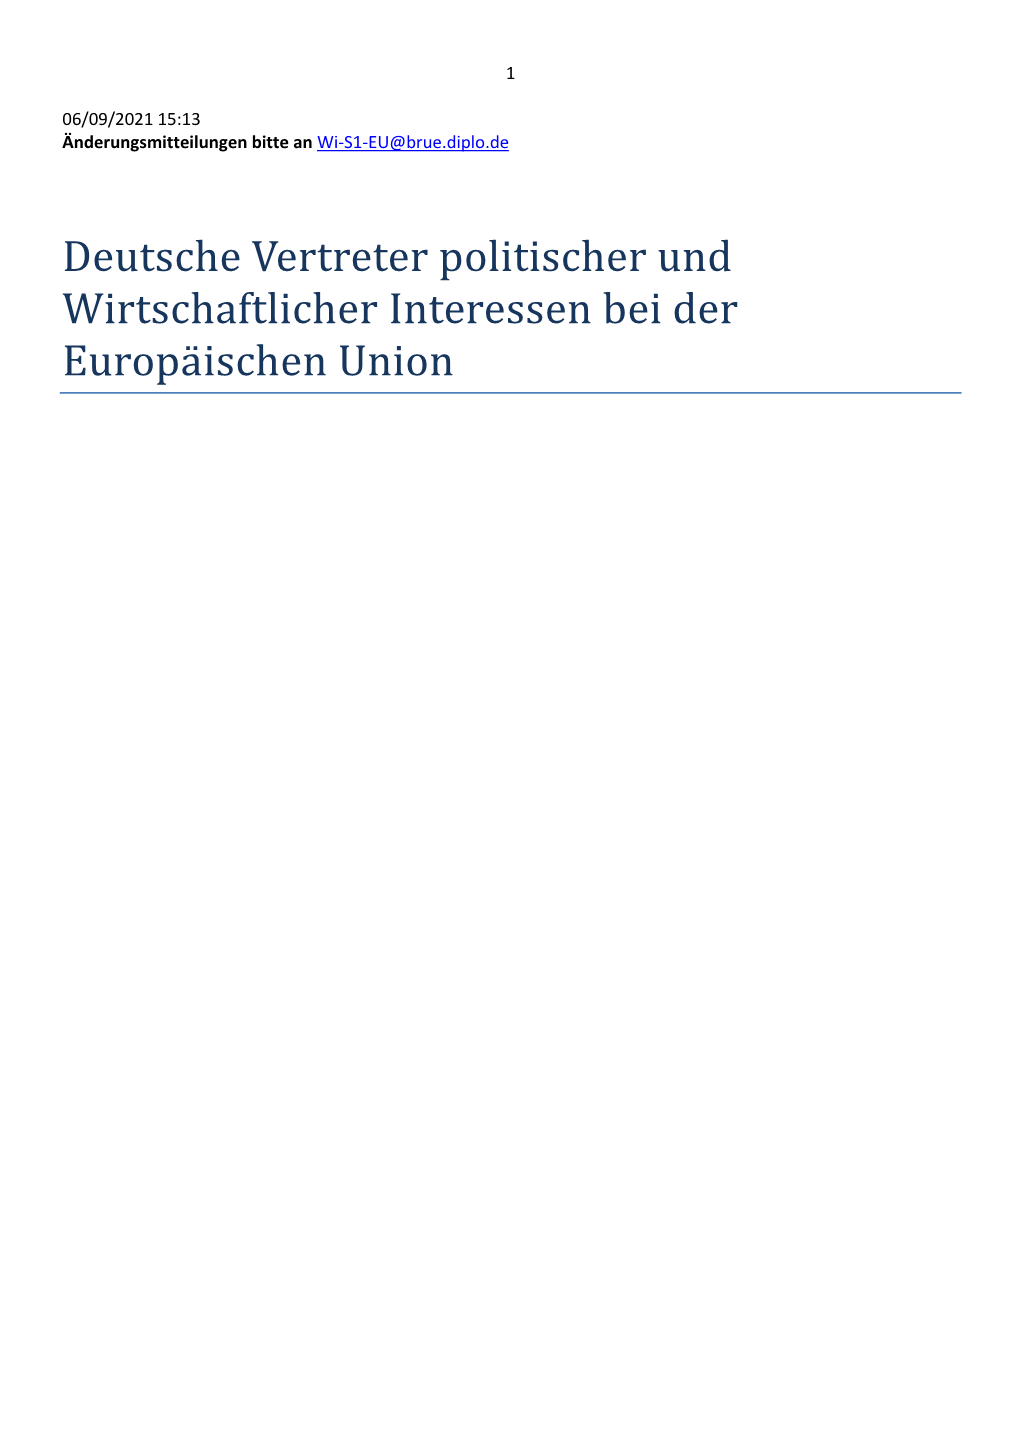 Deutsche Vertreter Politischer Und Wirtschaftlicher Interessen Bei Der Europa Ischen Union 2